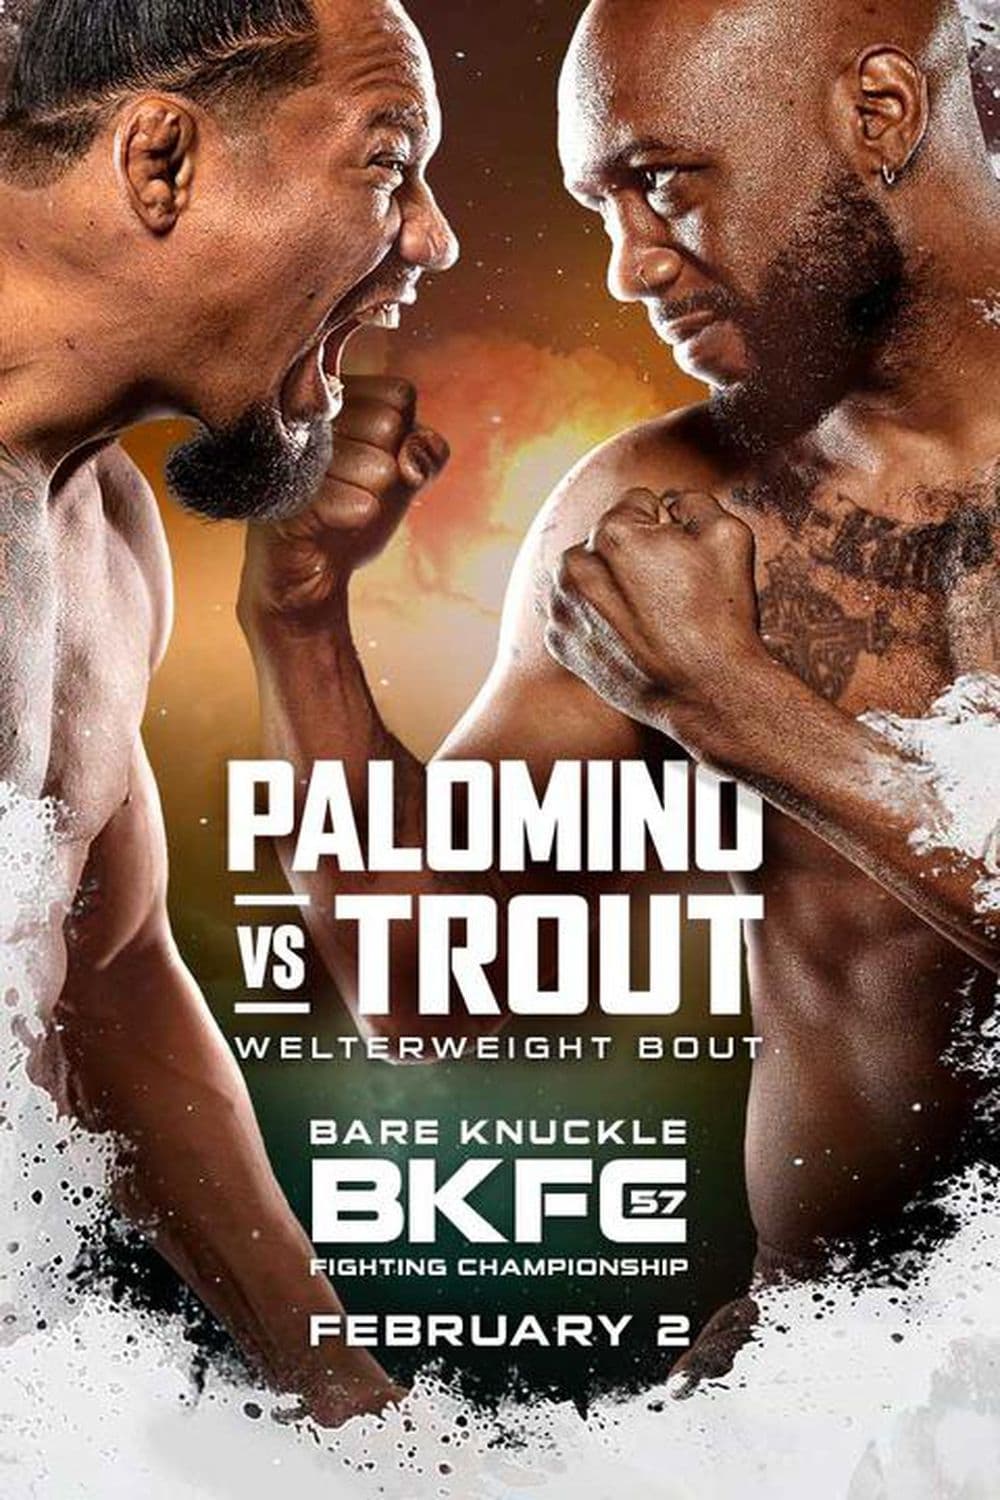 BKFC 57: Palomino vs. Trout